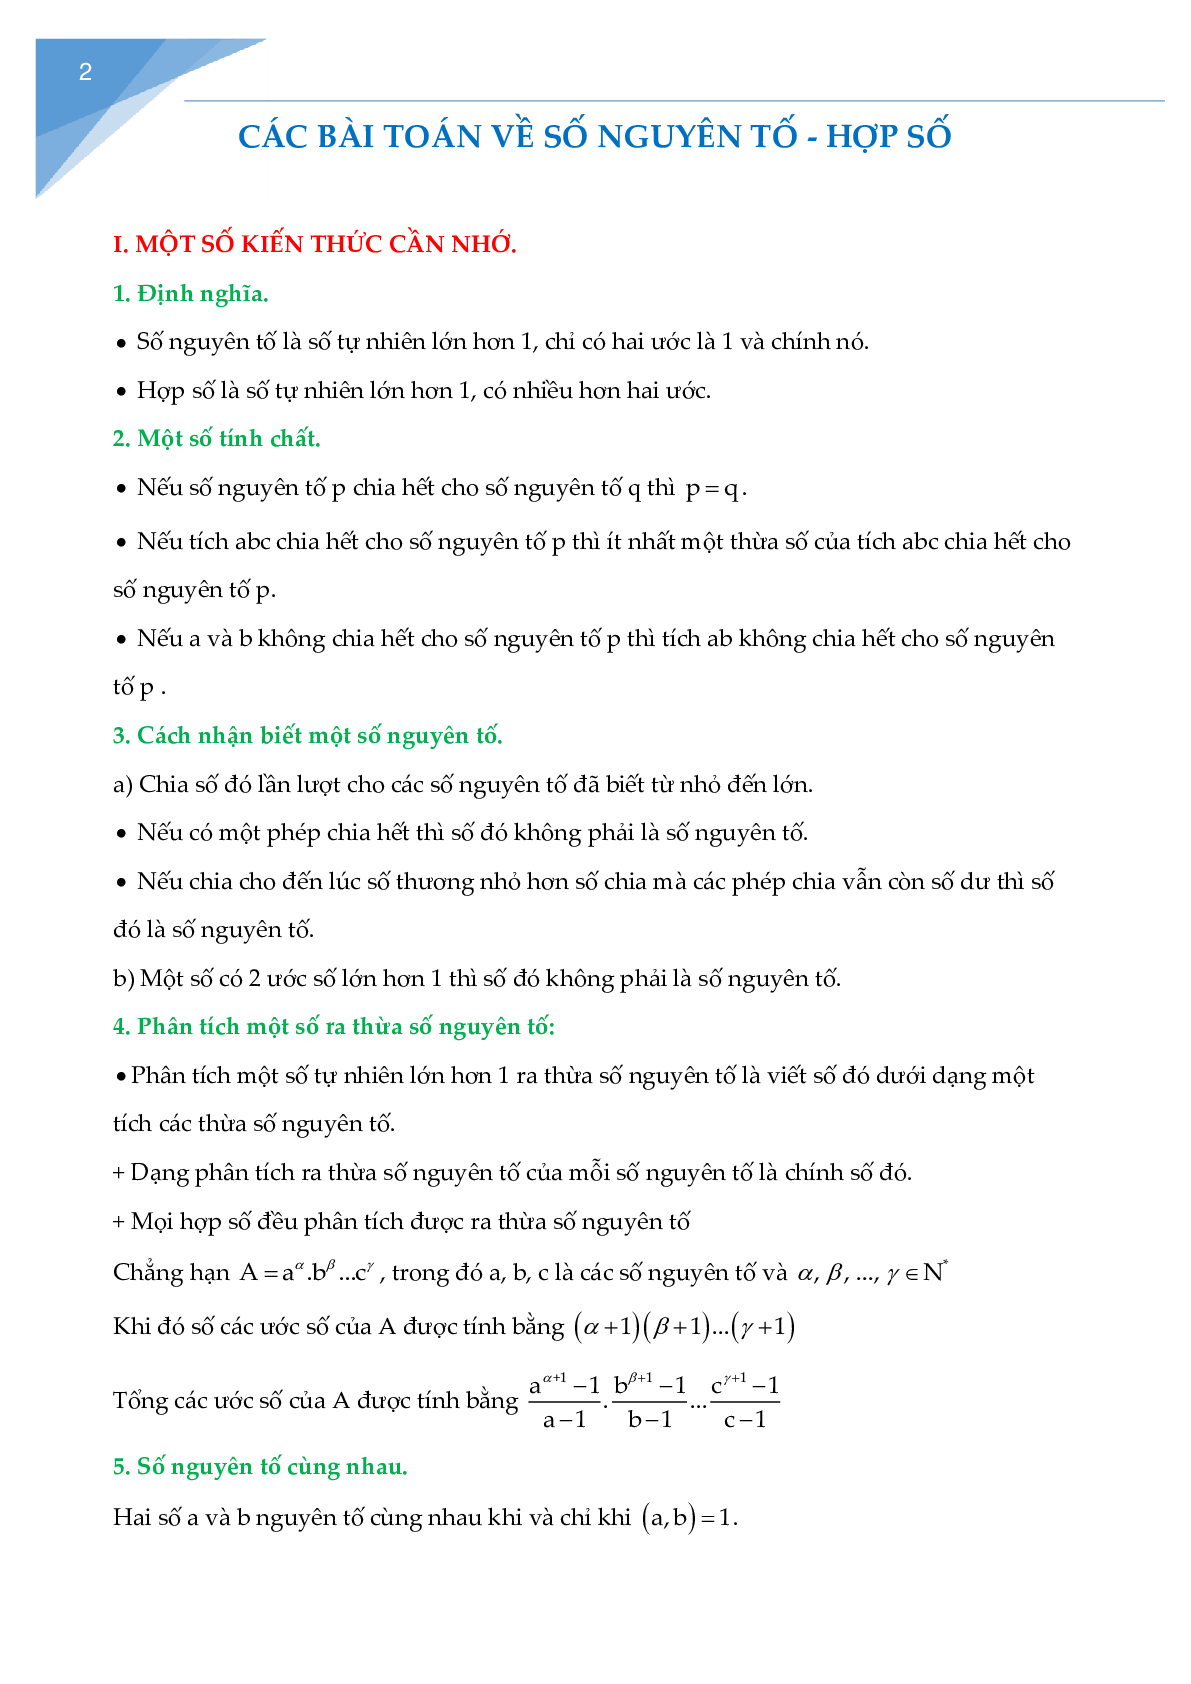 Các bài toán về số nguyên tố, hợp số chọn lọc (trang 2)